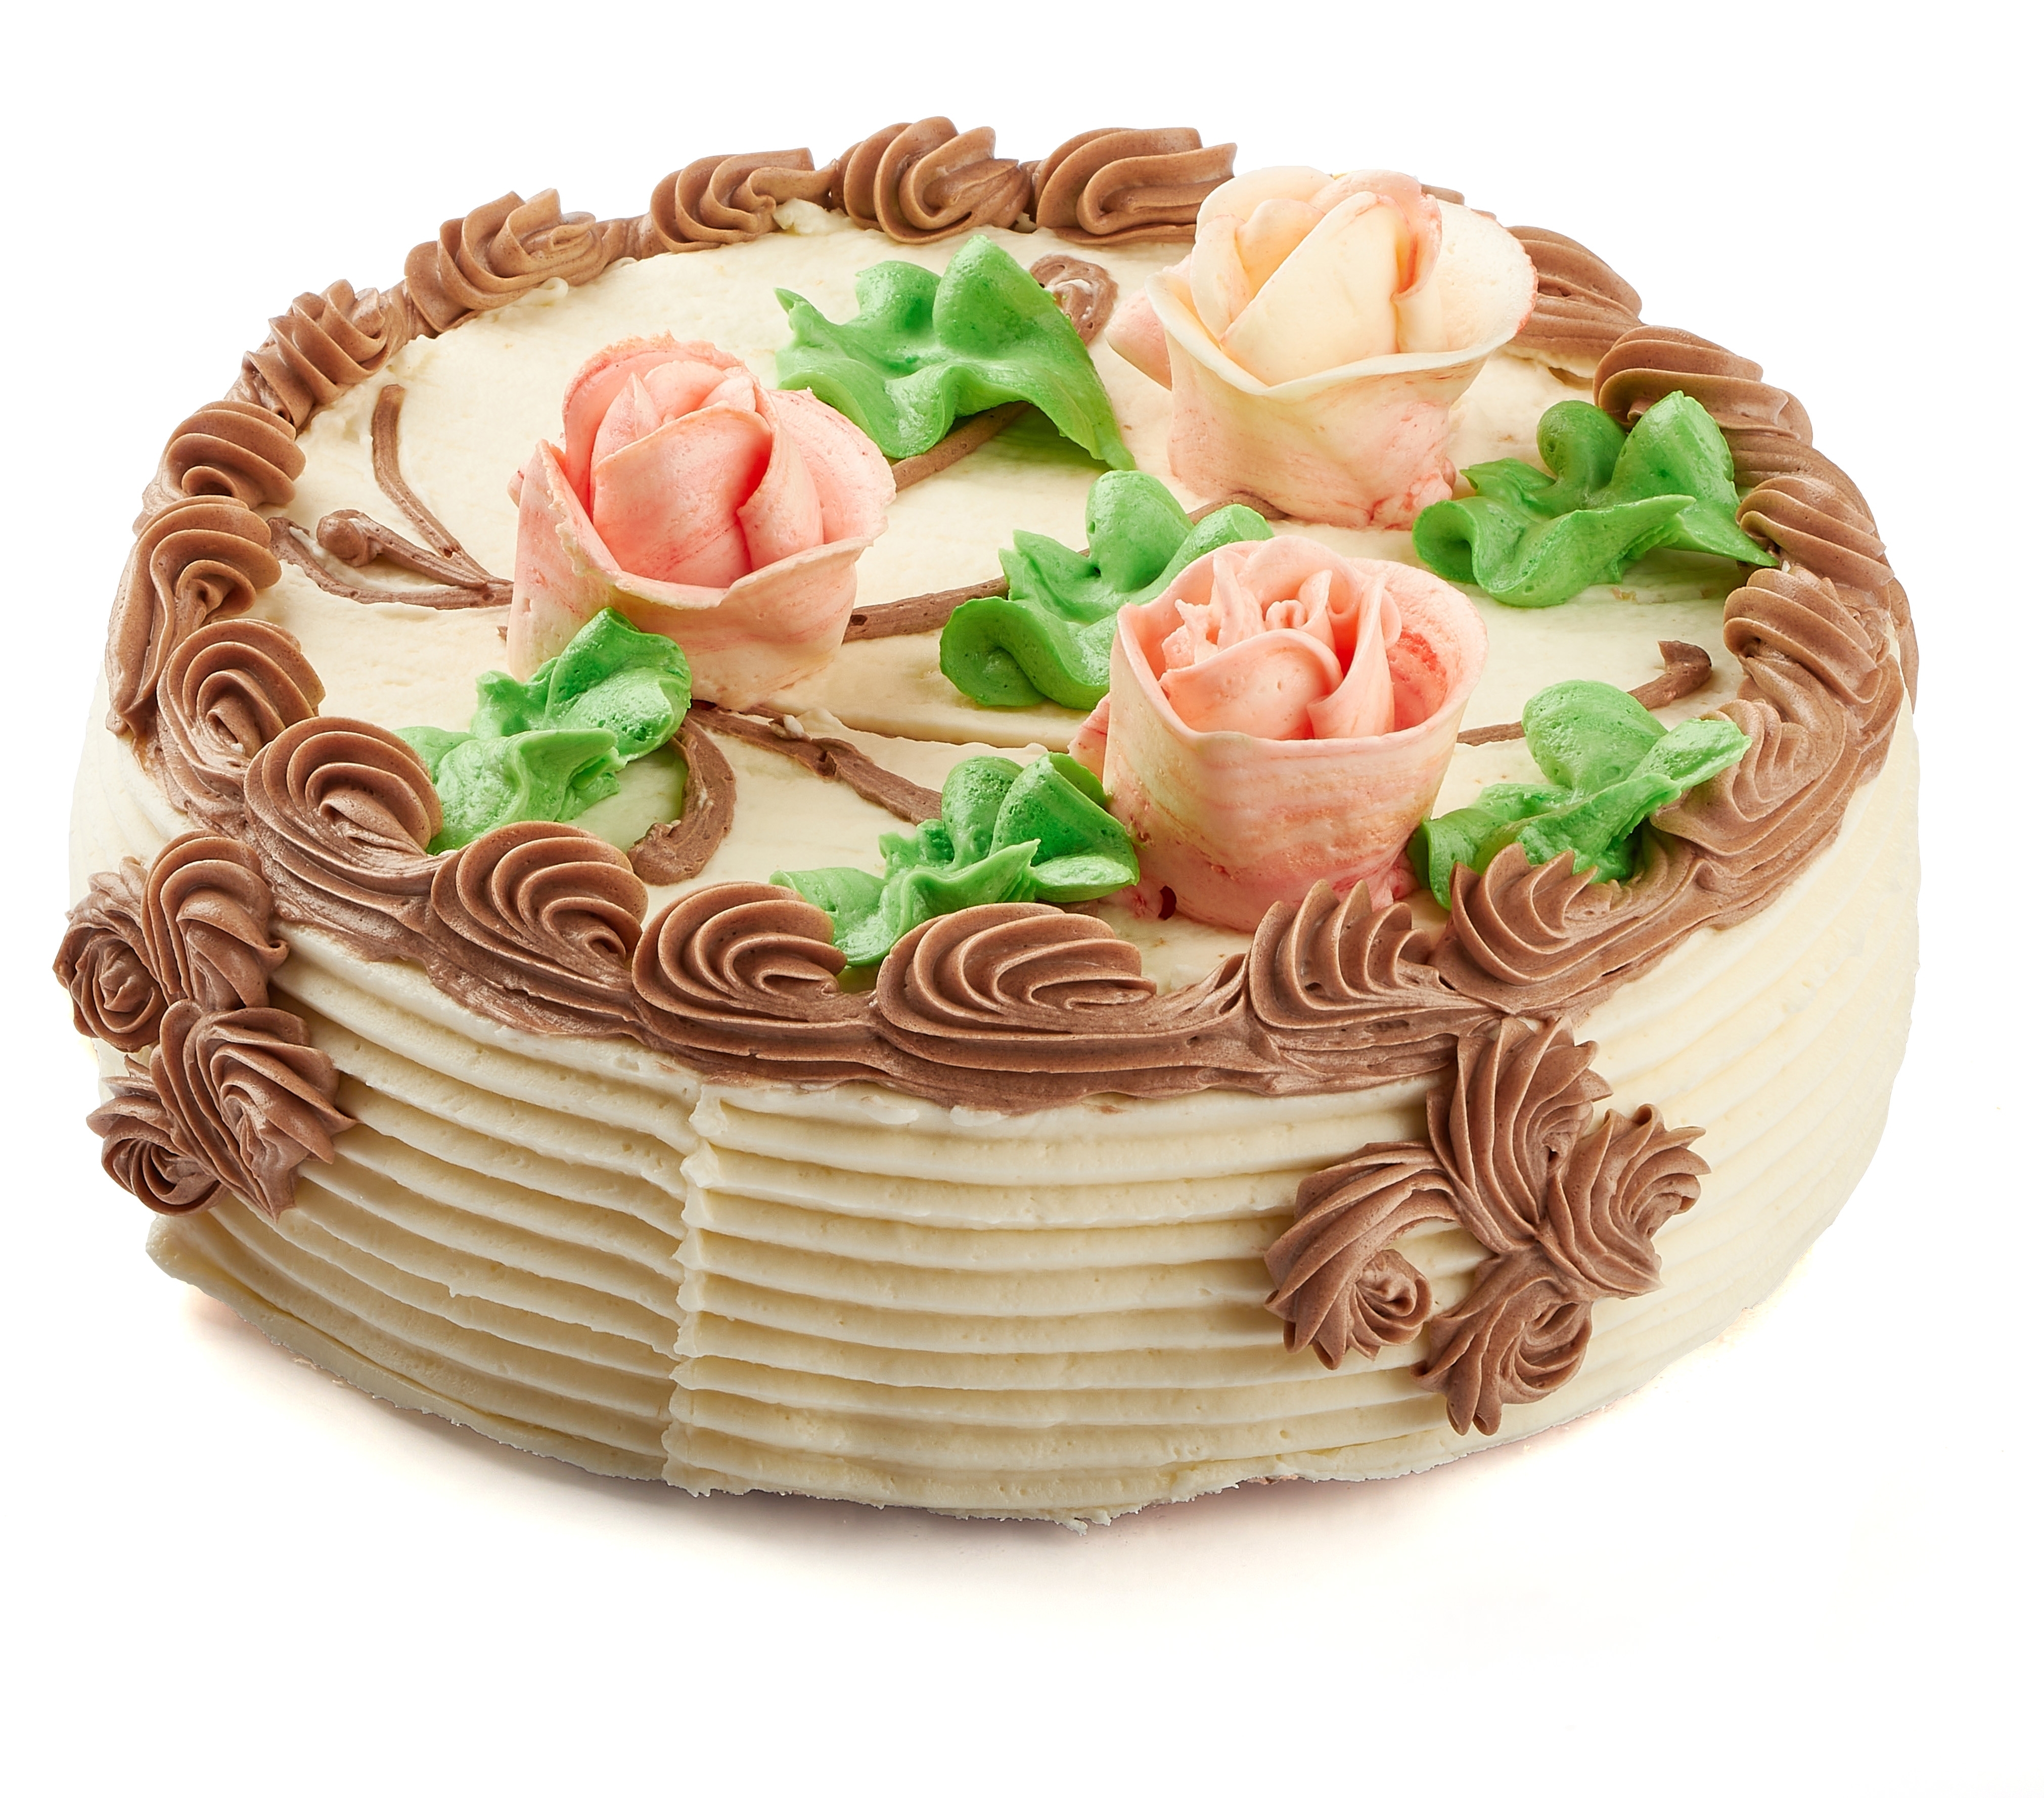                  Торт                    
                «                                 Ожидание                                 »                
                                   

                    0.7 кг - 460 рублей                    